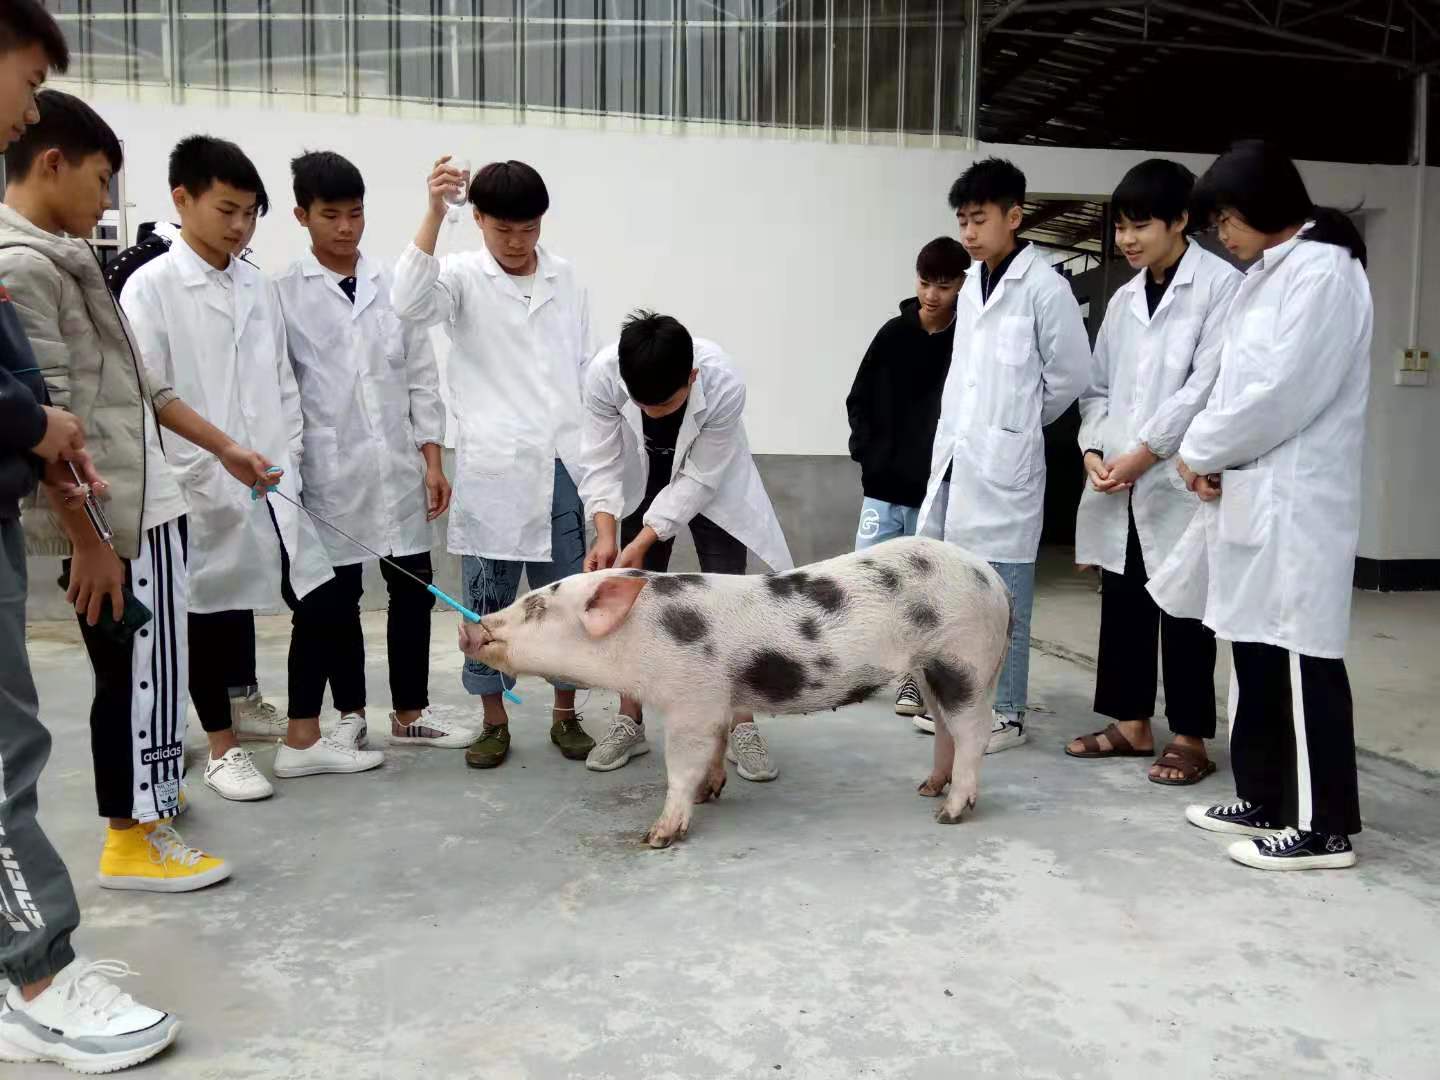 学生在给猪输液.jpg